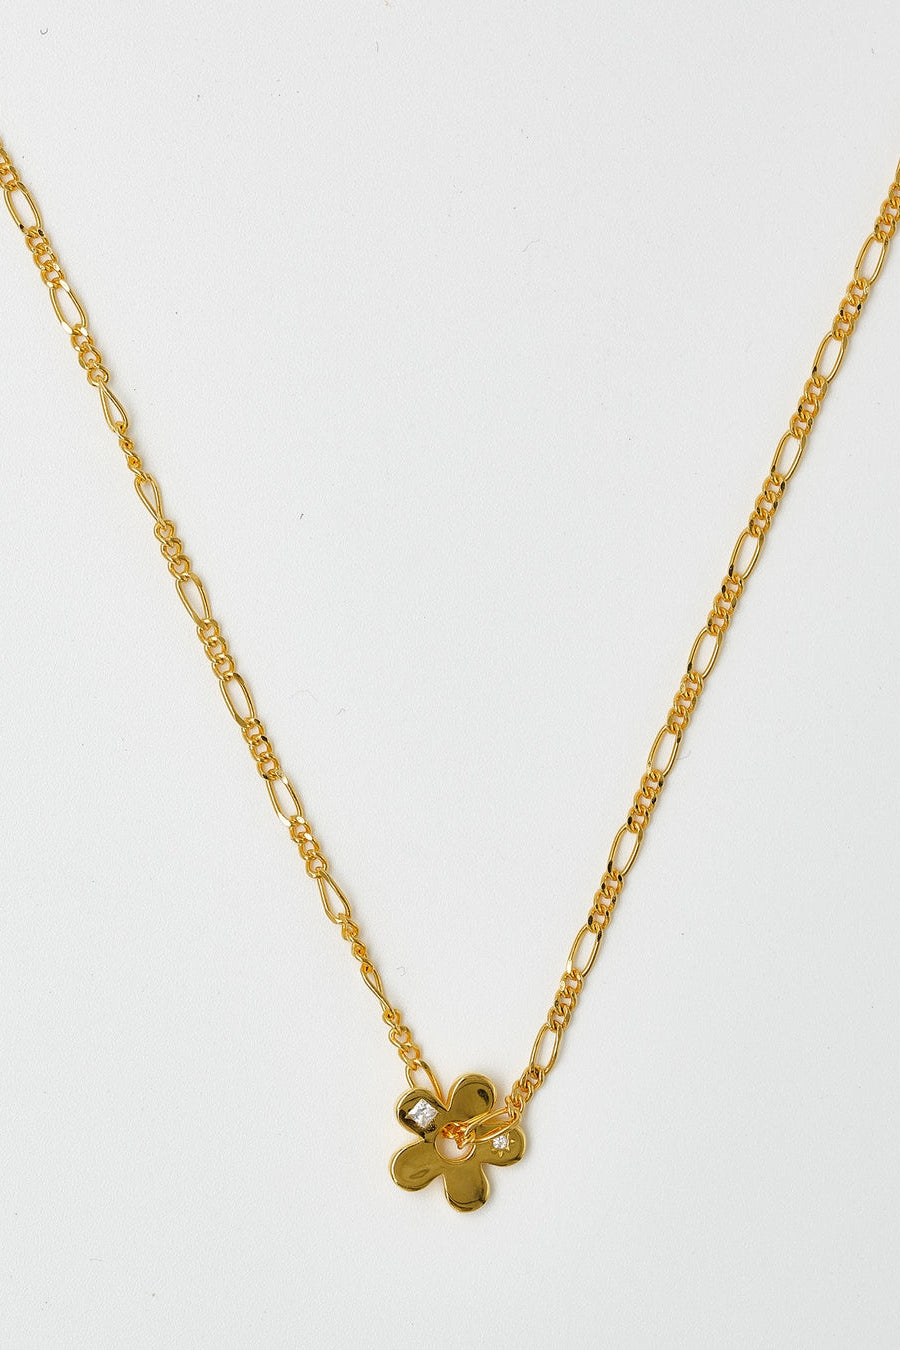 Brie Leon Signature Flower Pendant Necklace - Gold